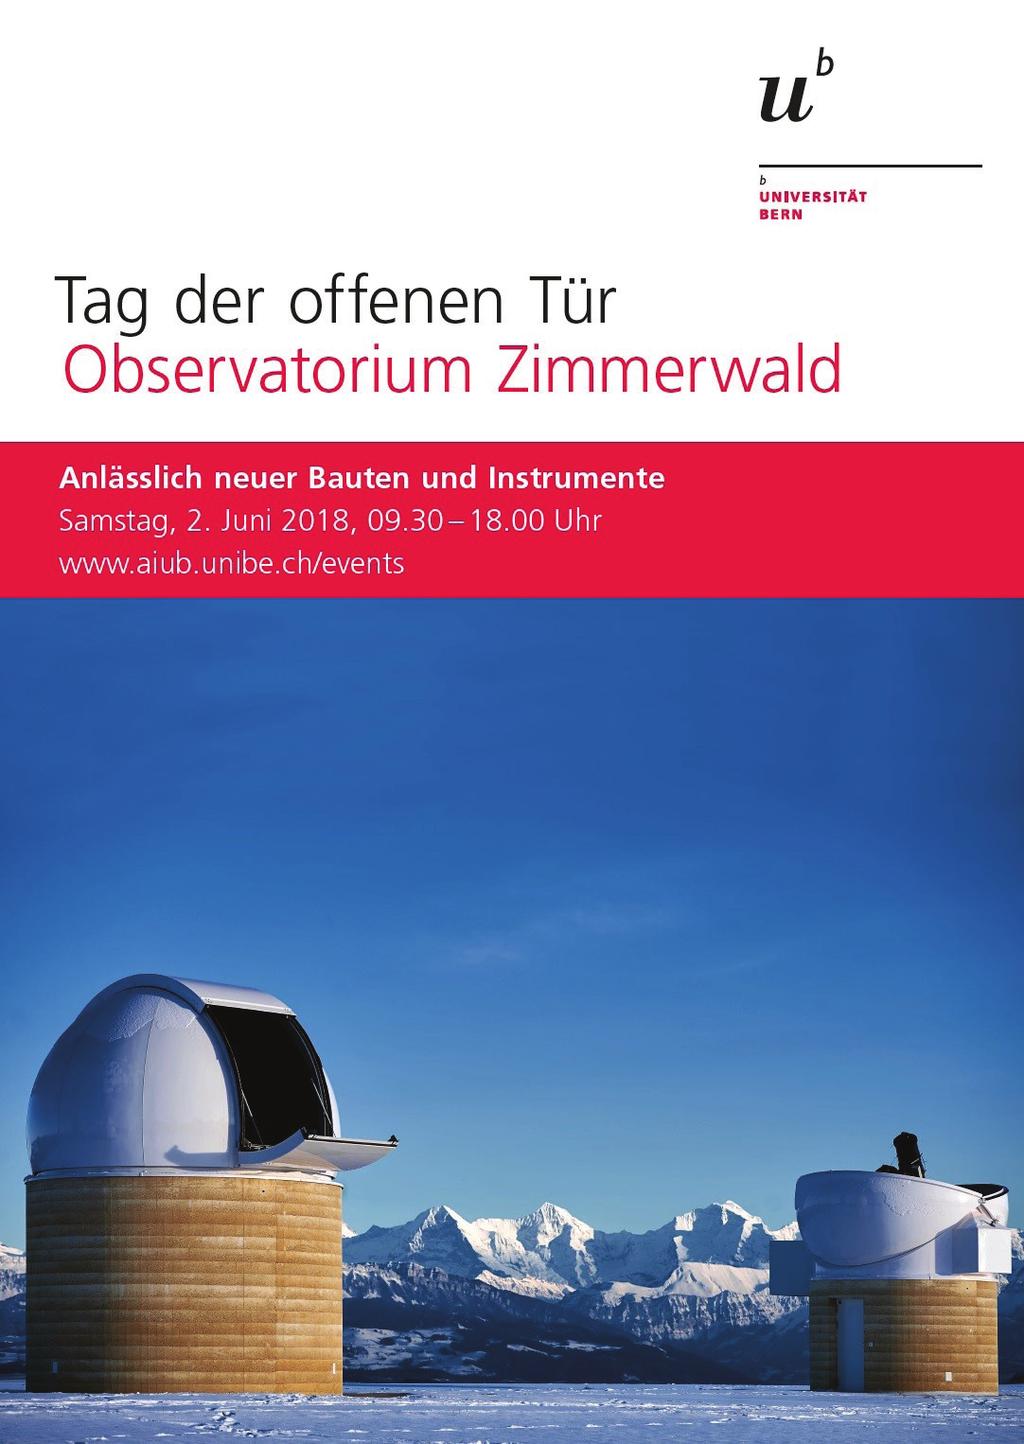 Tag der offenen Tür im Observatorium der Uni Bern in Zimmerwald am 2.